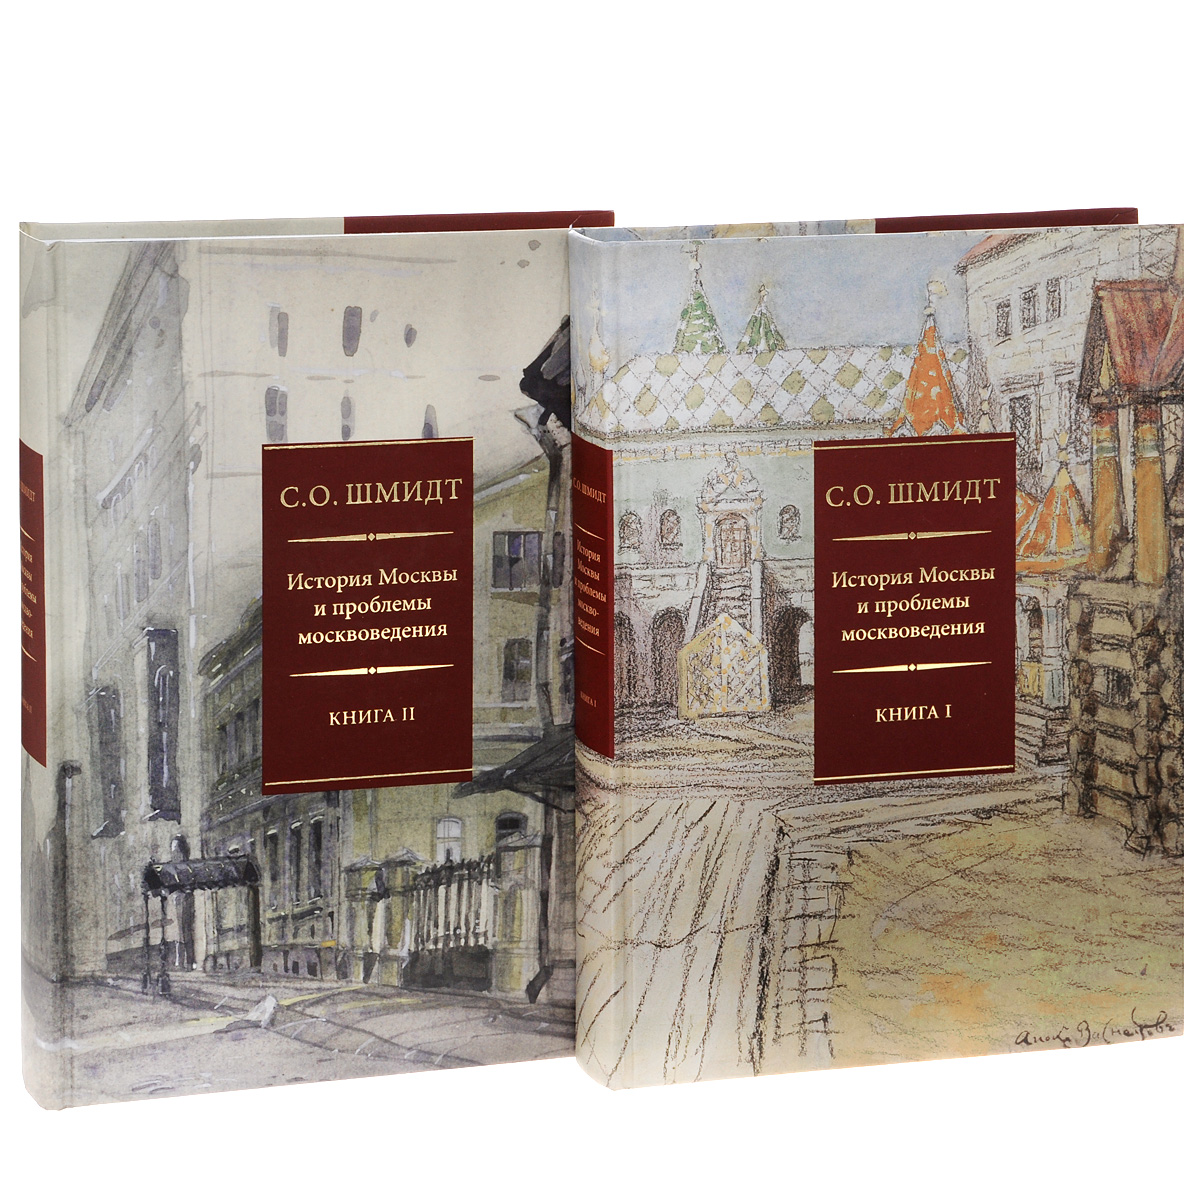 История Москвы и проблемы москвоведения. В 2 книгах ) происходит внимательно рассматривая